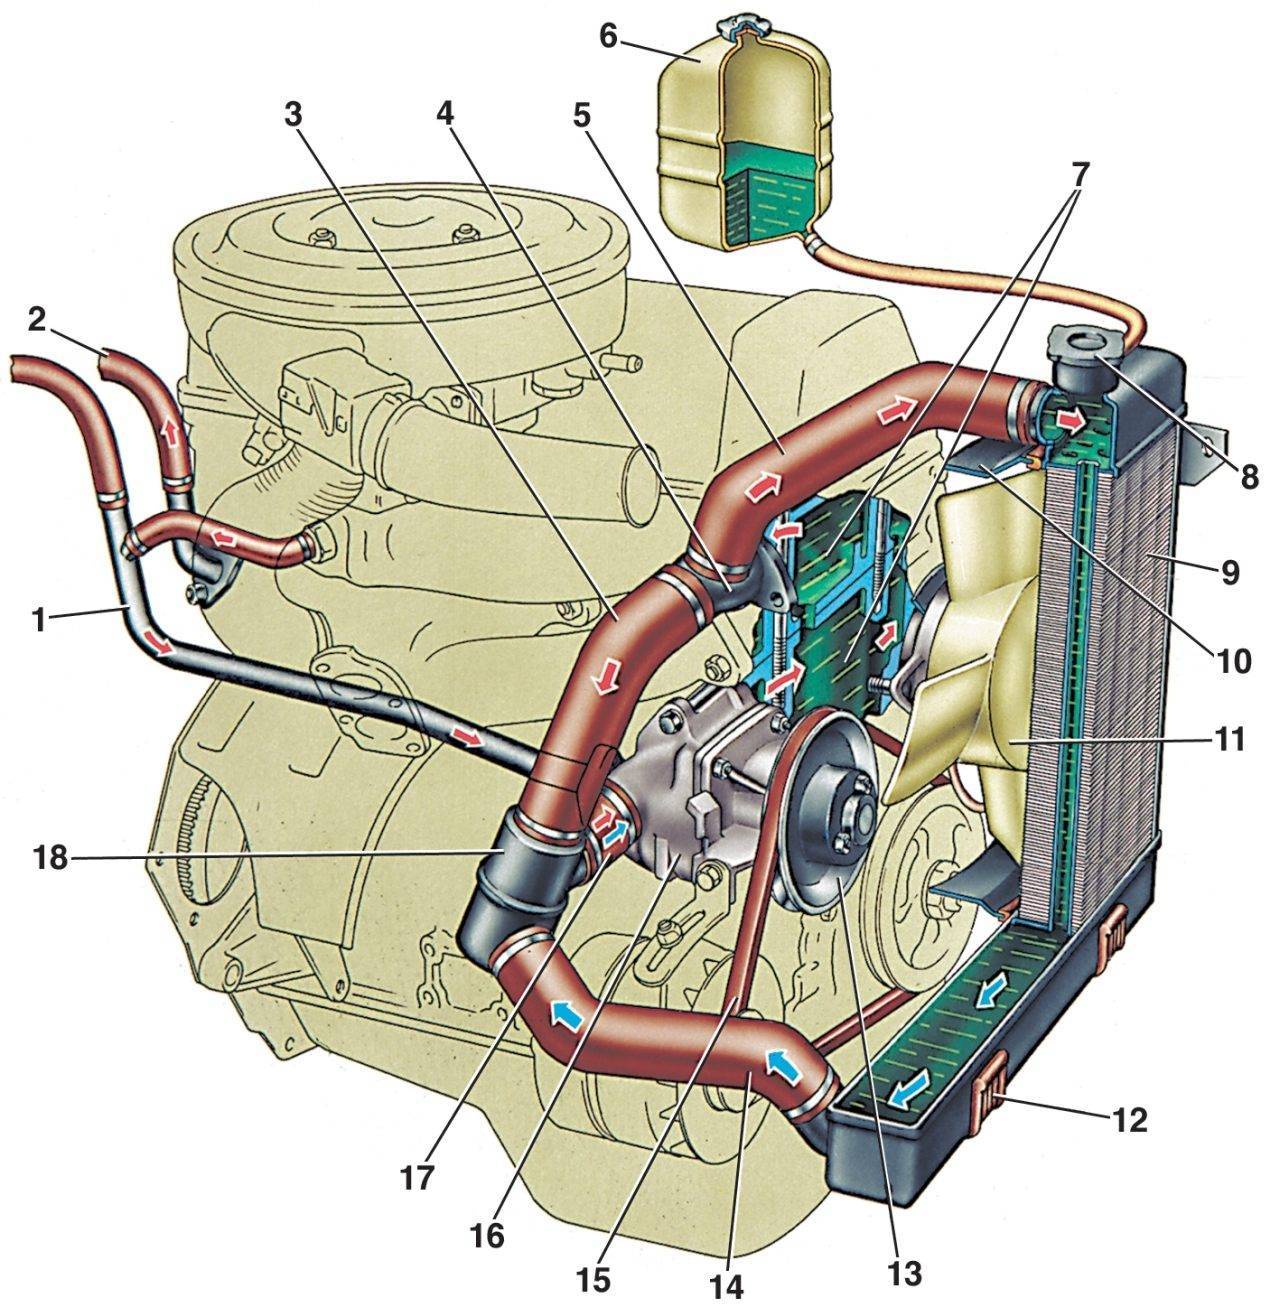 Воздух в системе охлаждения двигателя автомобиля: признаки и способы устранения воздушной пробки